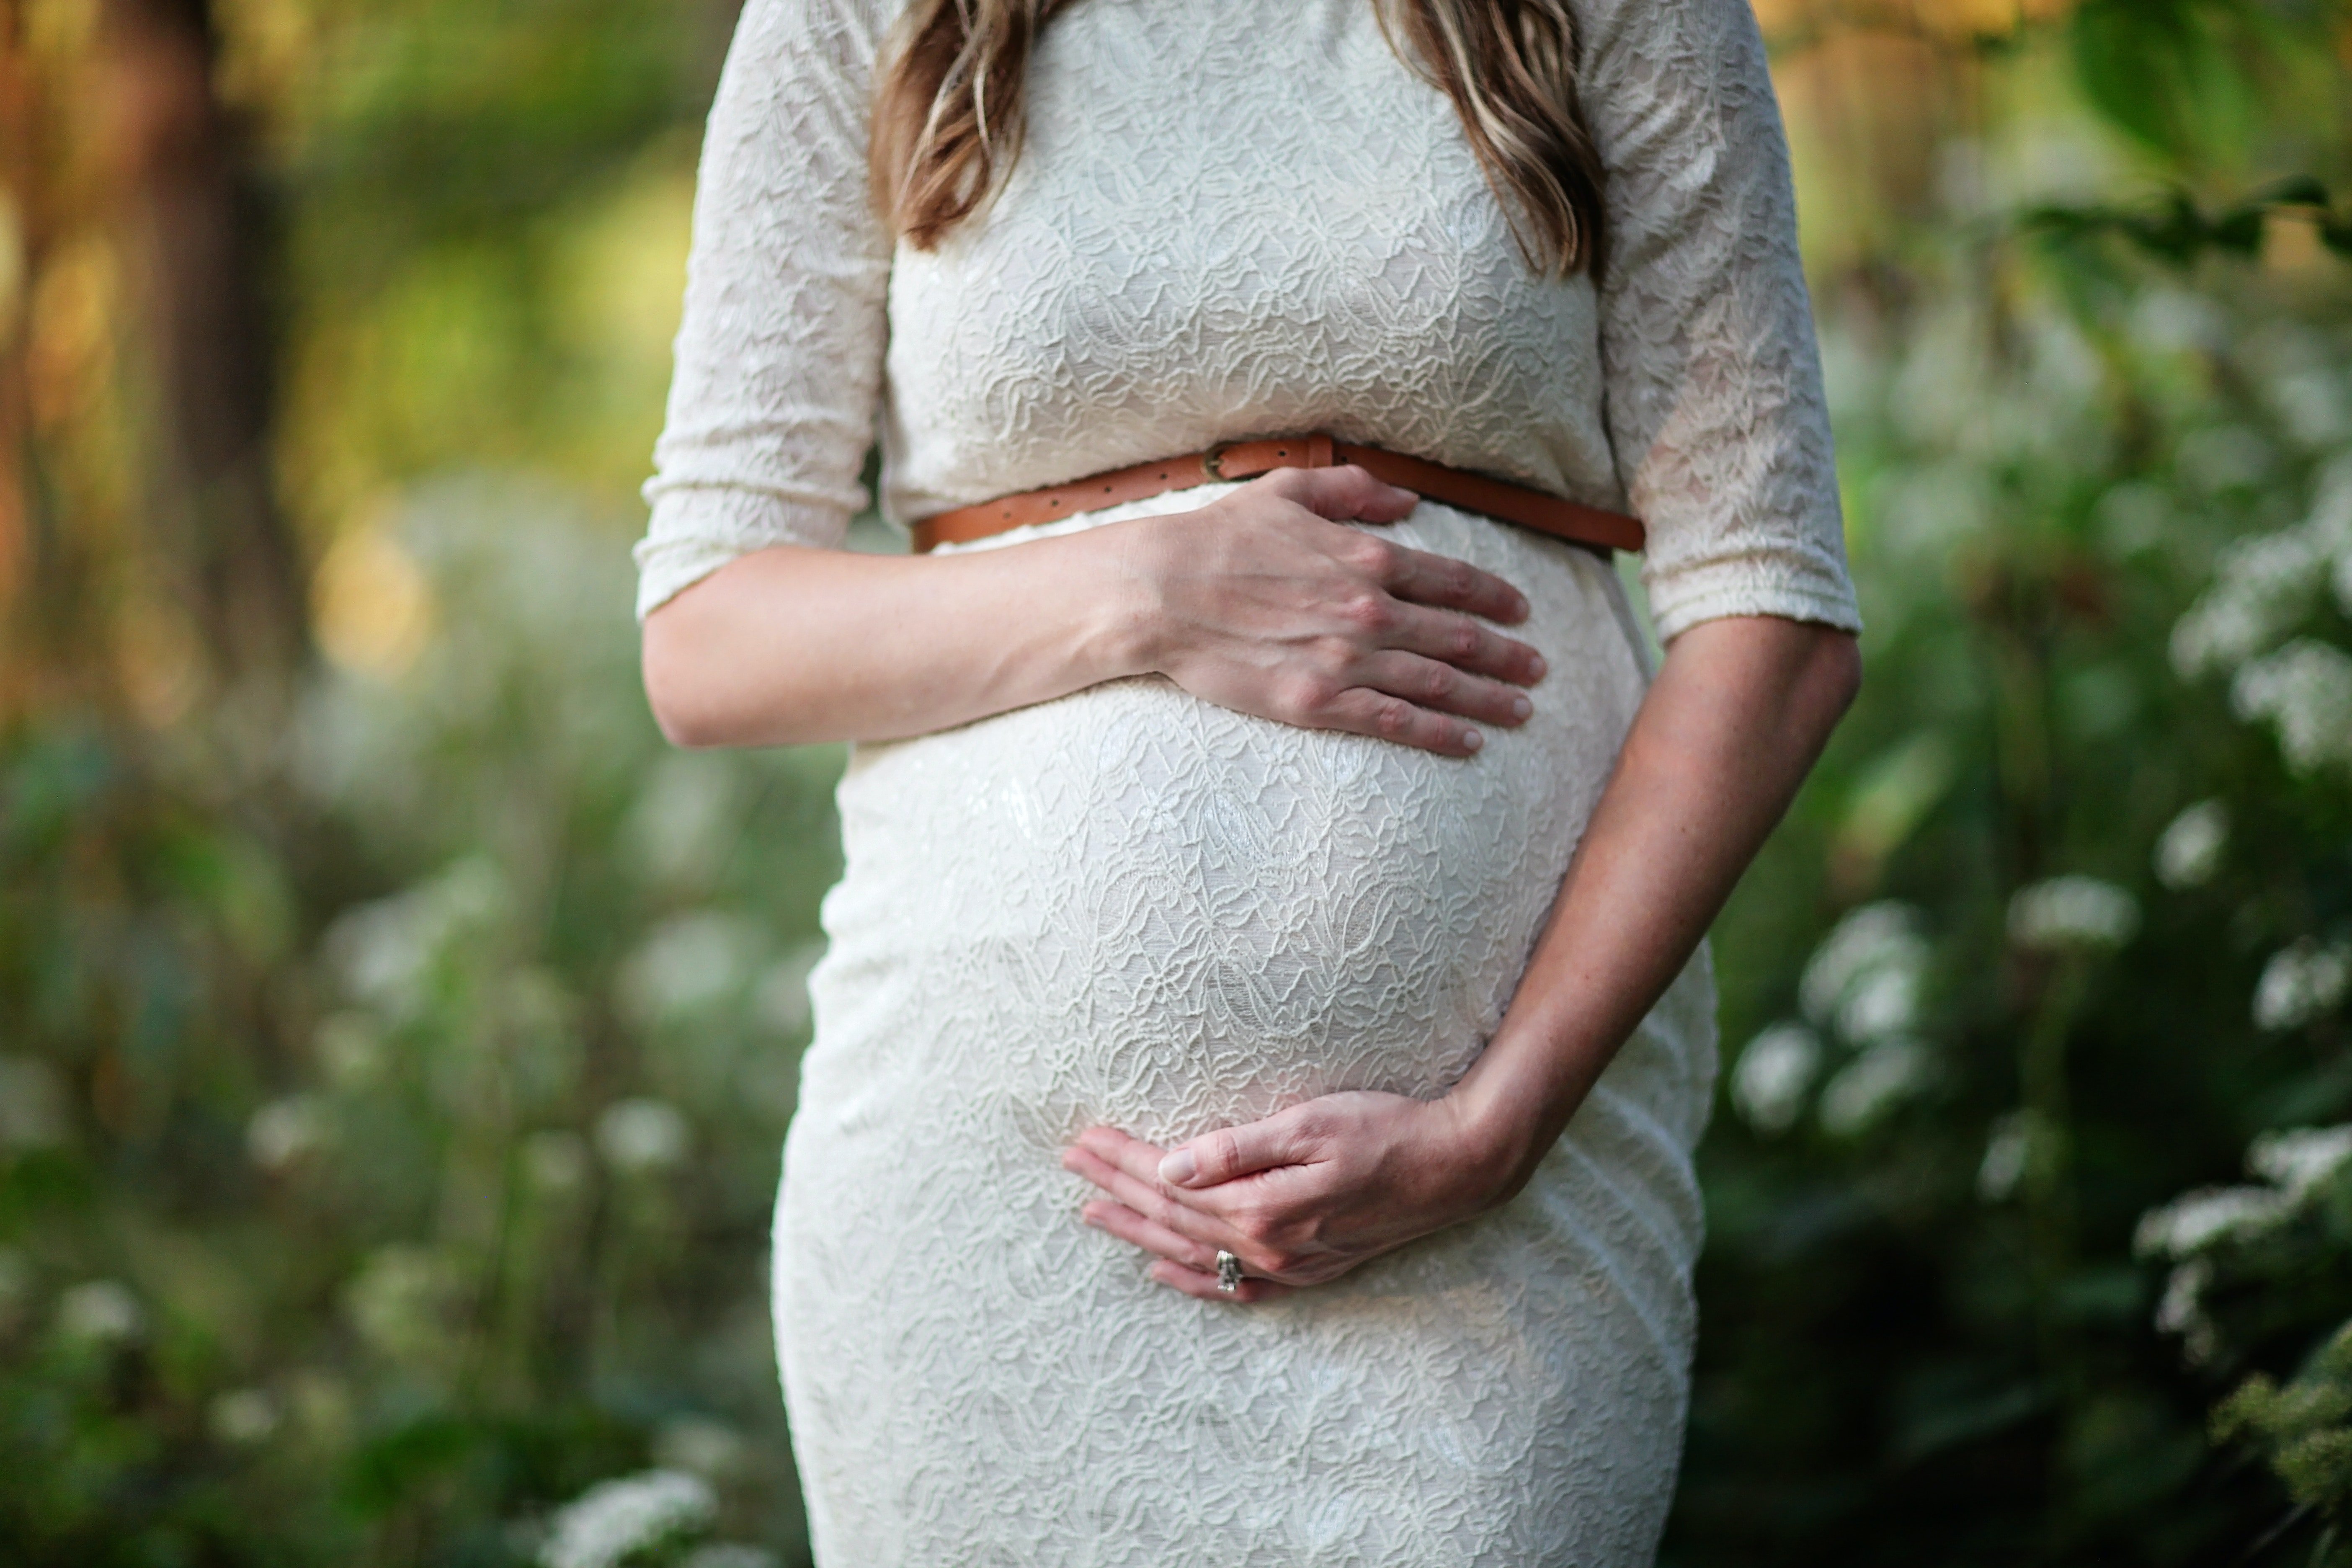 Kinova, enceinte, ne se doutait pas qu'elle était sur le point de battre le record de naissance de son pays | Source : Pexels